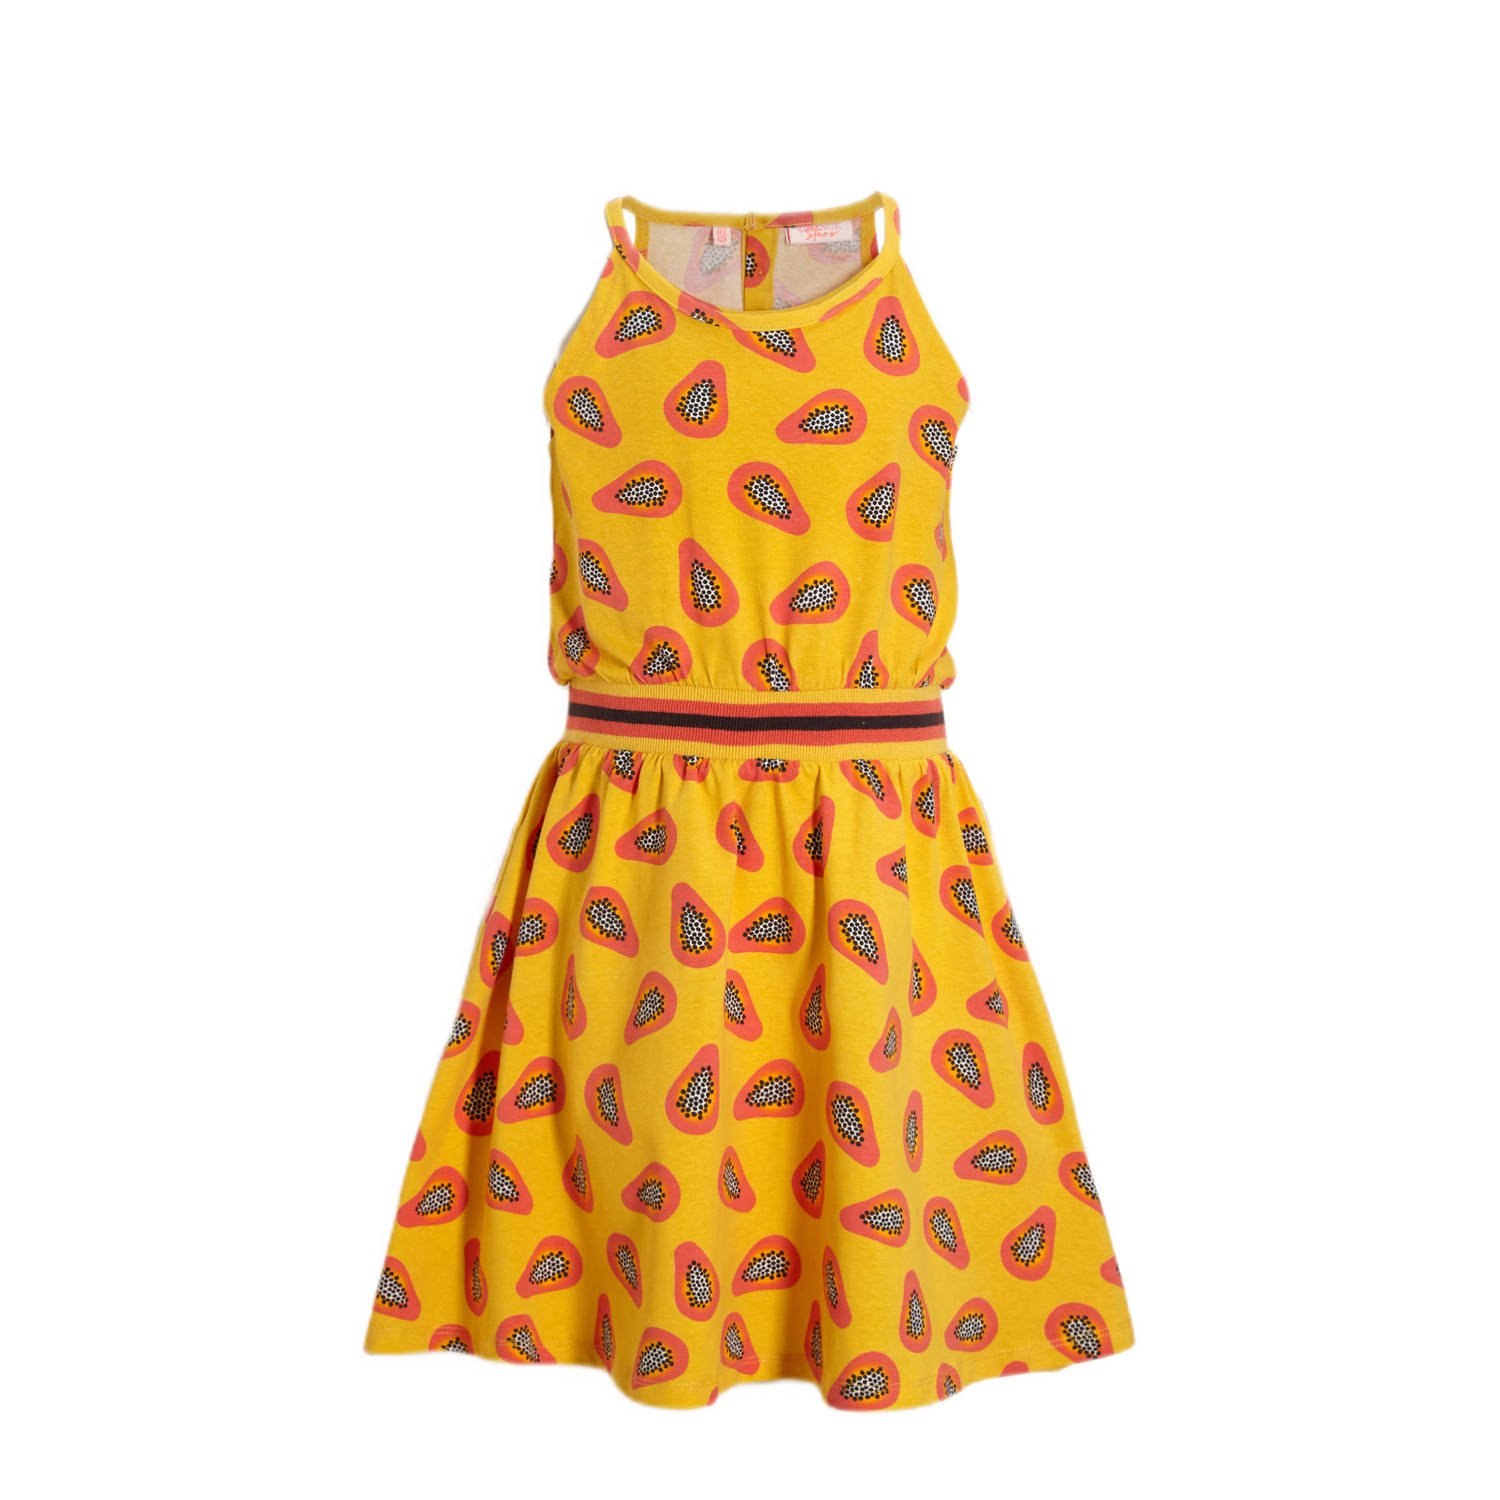 Orange Stars jurk Perihan met all over print geel Meisjes Katoen Ronde hals 110 116